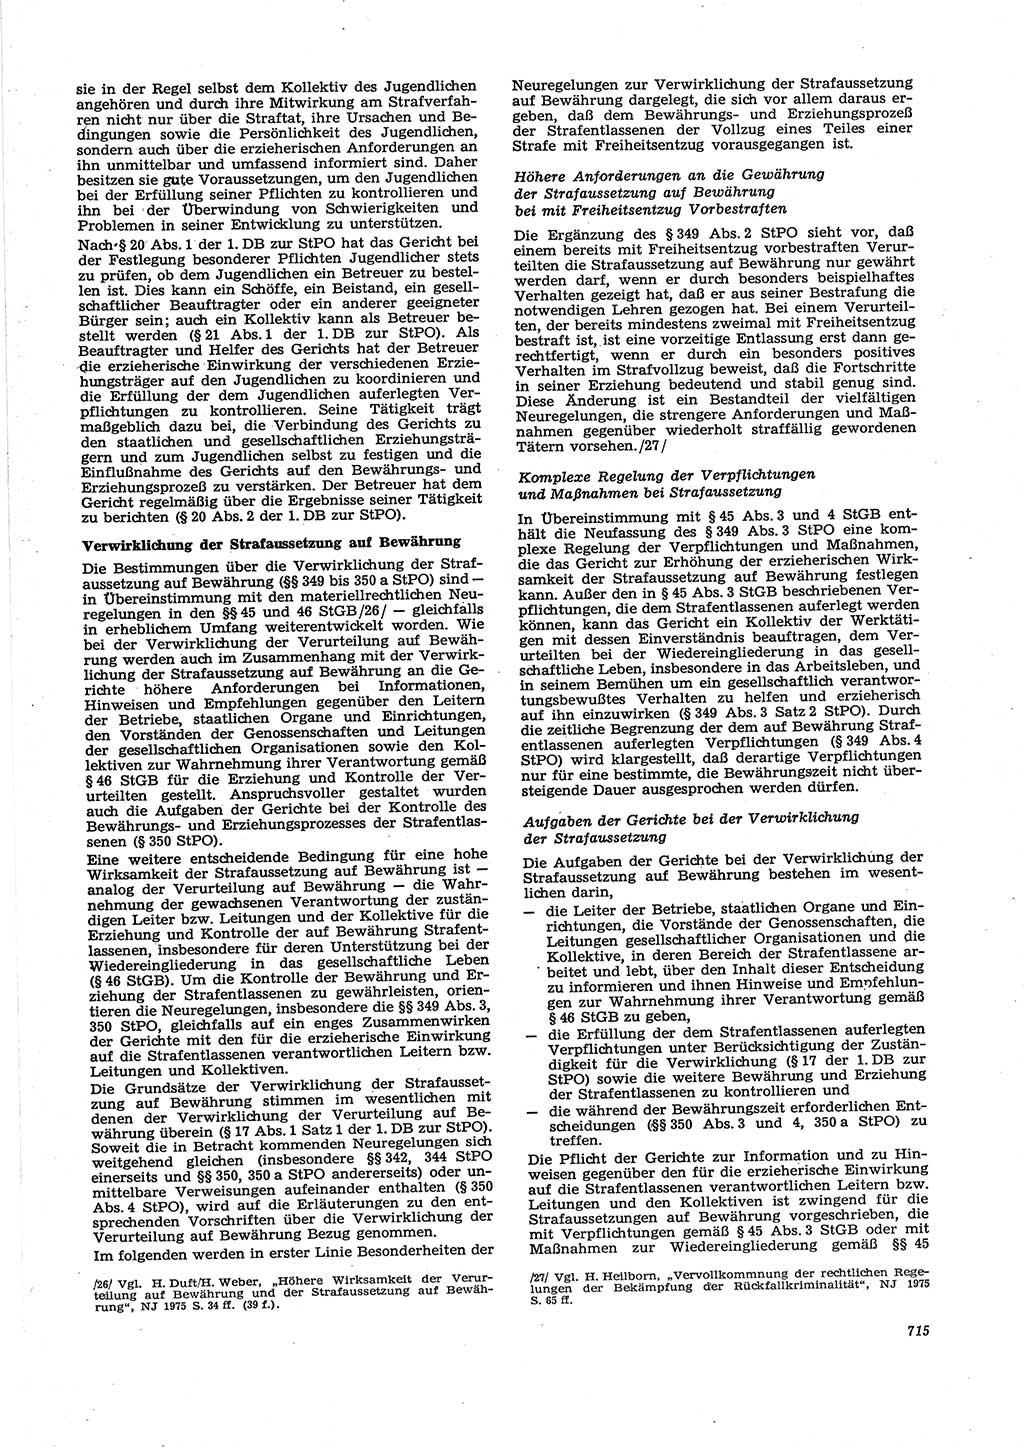 Neue Justiz (NJ), Zeitschrift für Recht und Rechtswissenschaft [Deutsche Demokratische Republik (DDR)], 29. Jahrgang 1975, Seite 715 (NJ DDR 1975, S. 715)